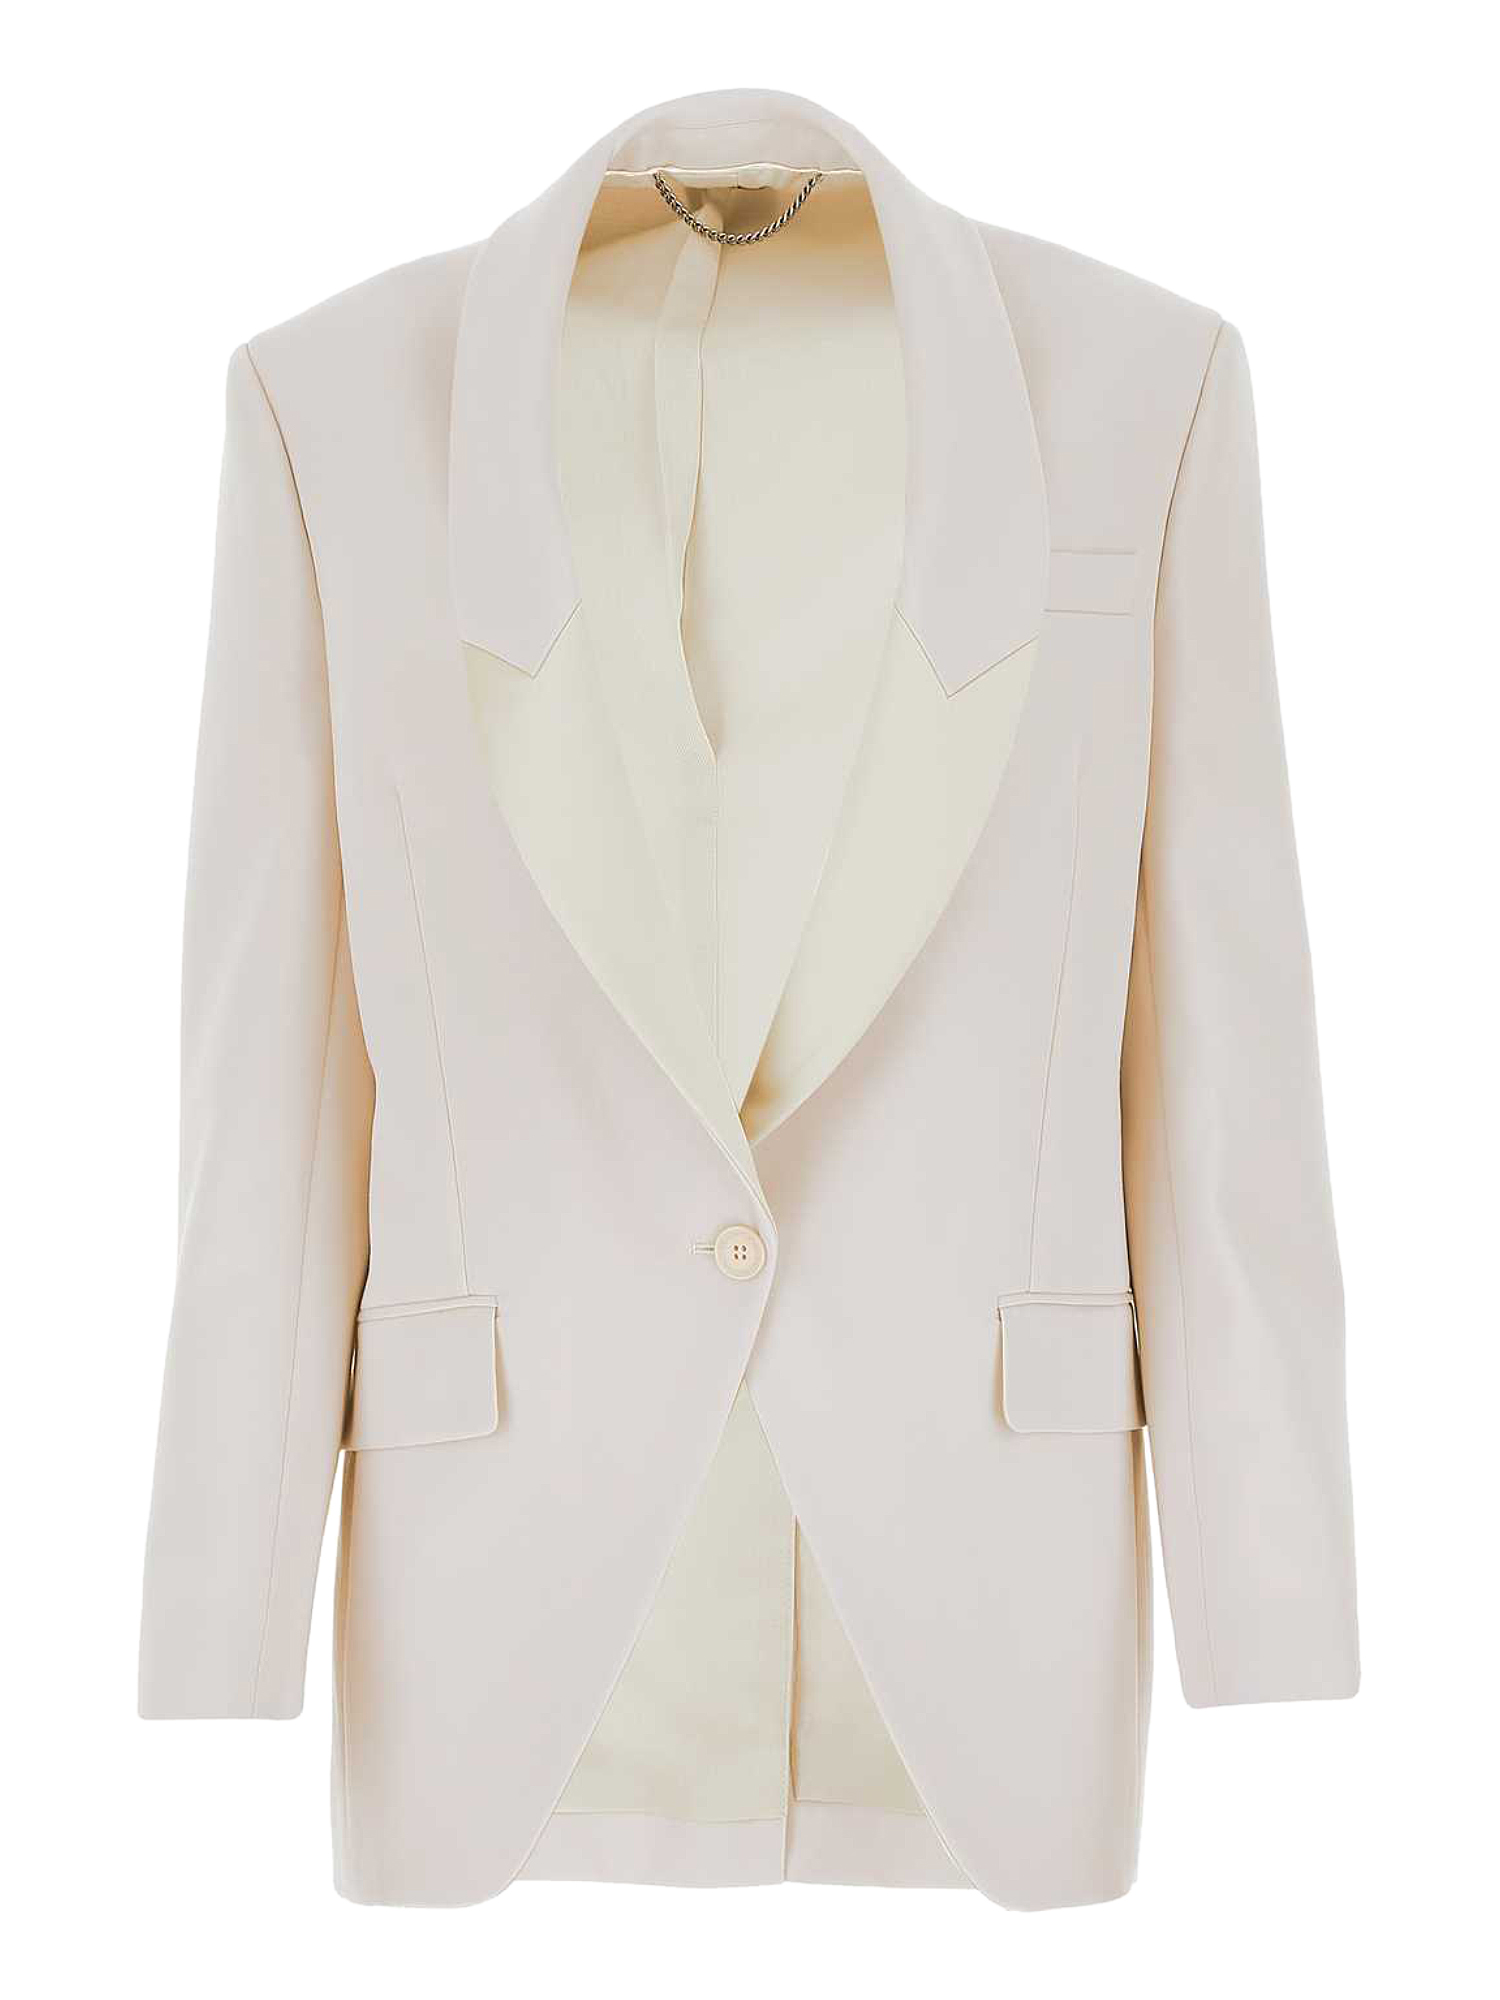 Vestes Pour Femme - Stella Mccartney - En Wool Multicolor - Taille:  -